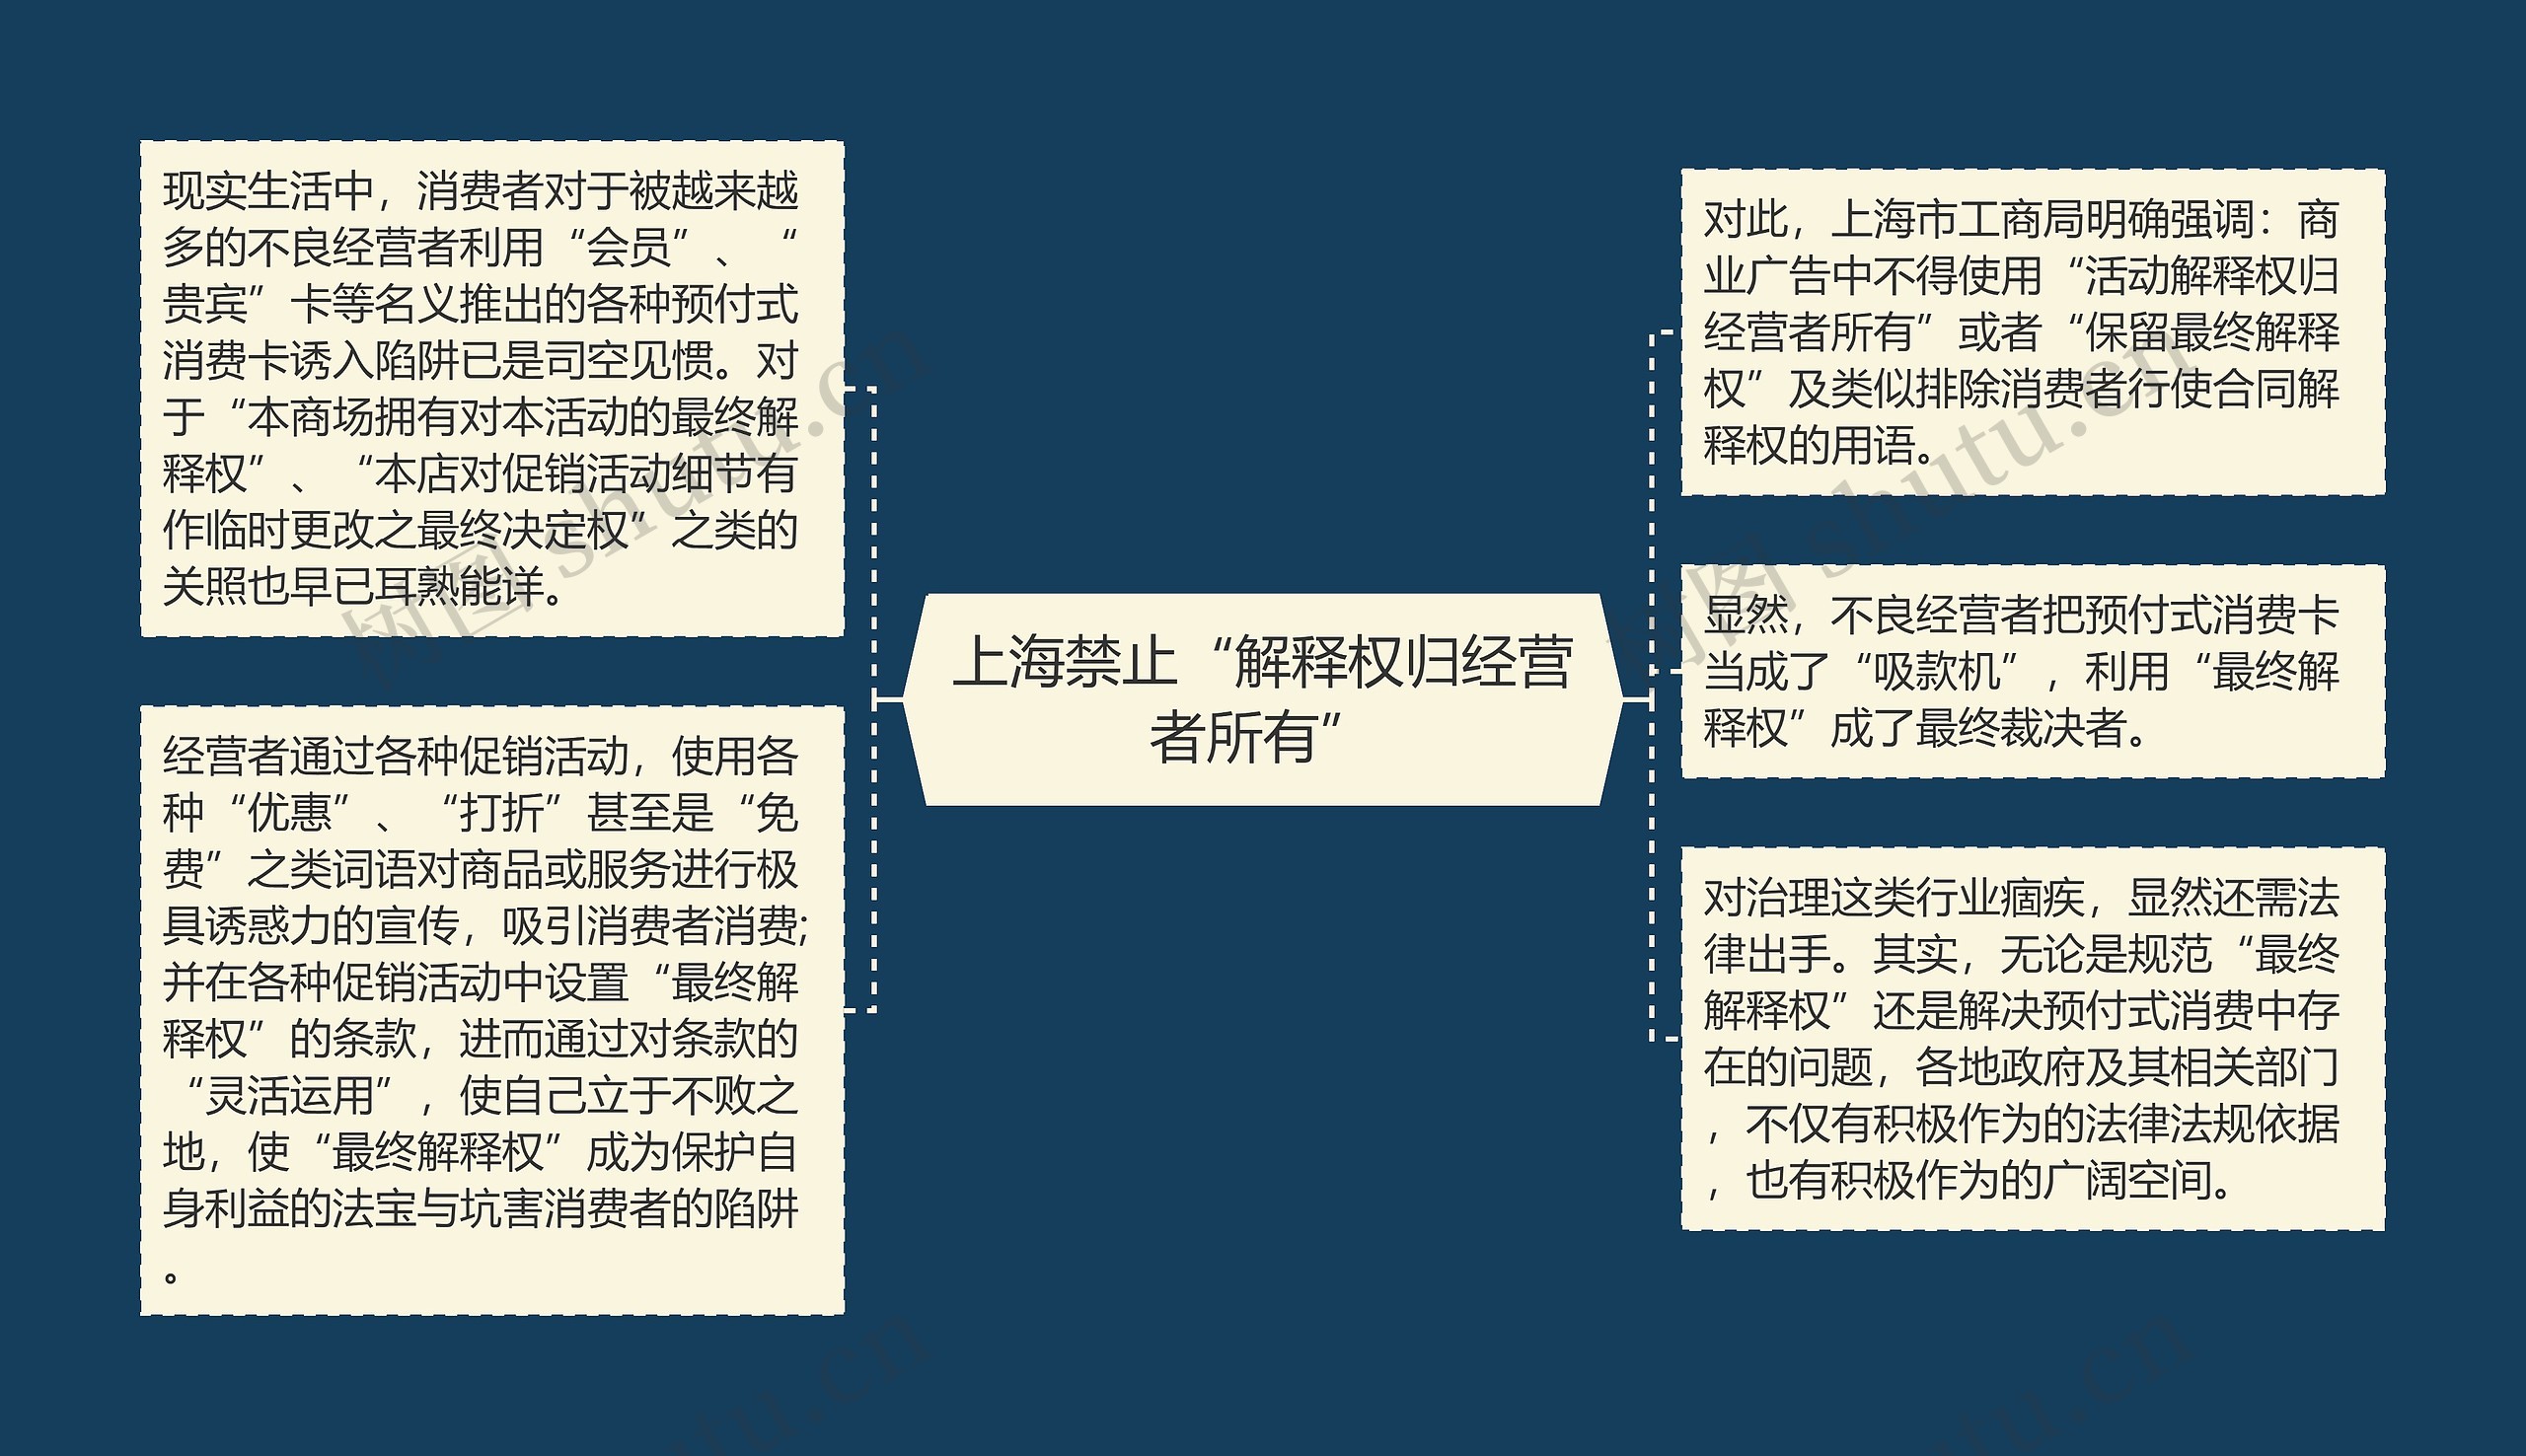 上海禁止“解释权归经营者所有”思维导图